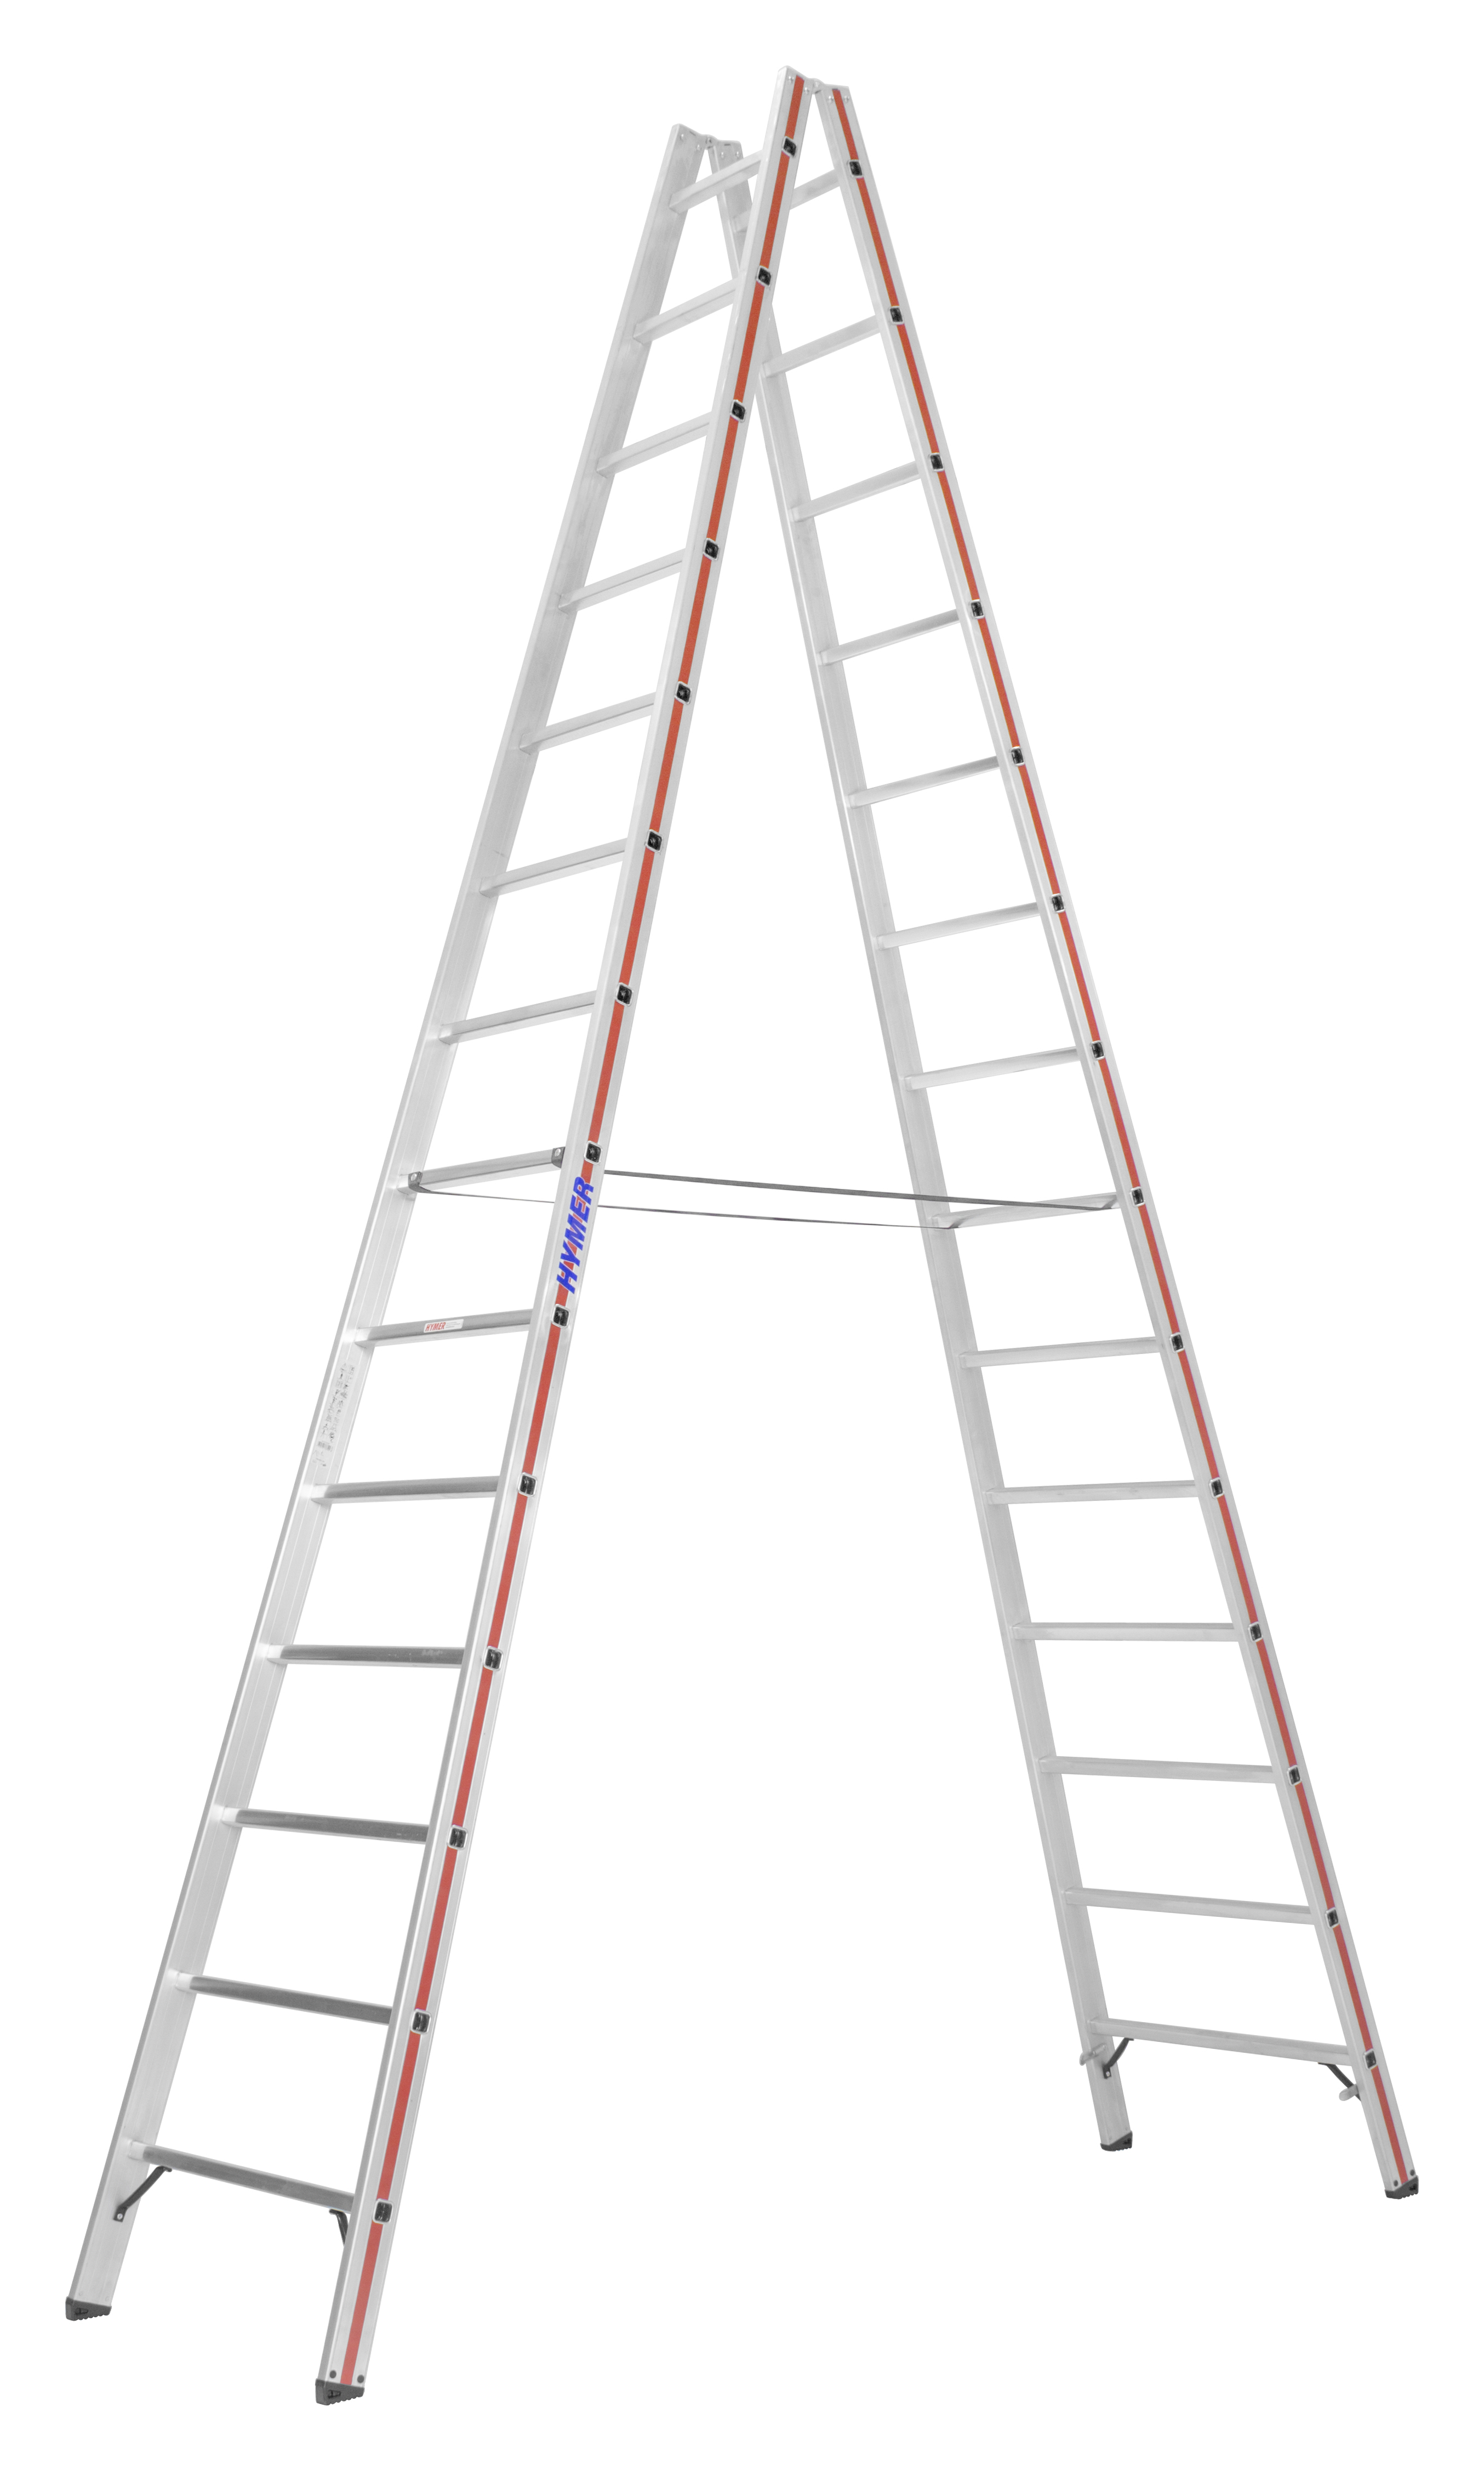 Sprossenstehleiter, beidseitig begehbar - 2x5 Sprossen/Stufen